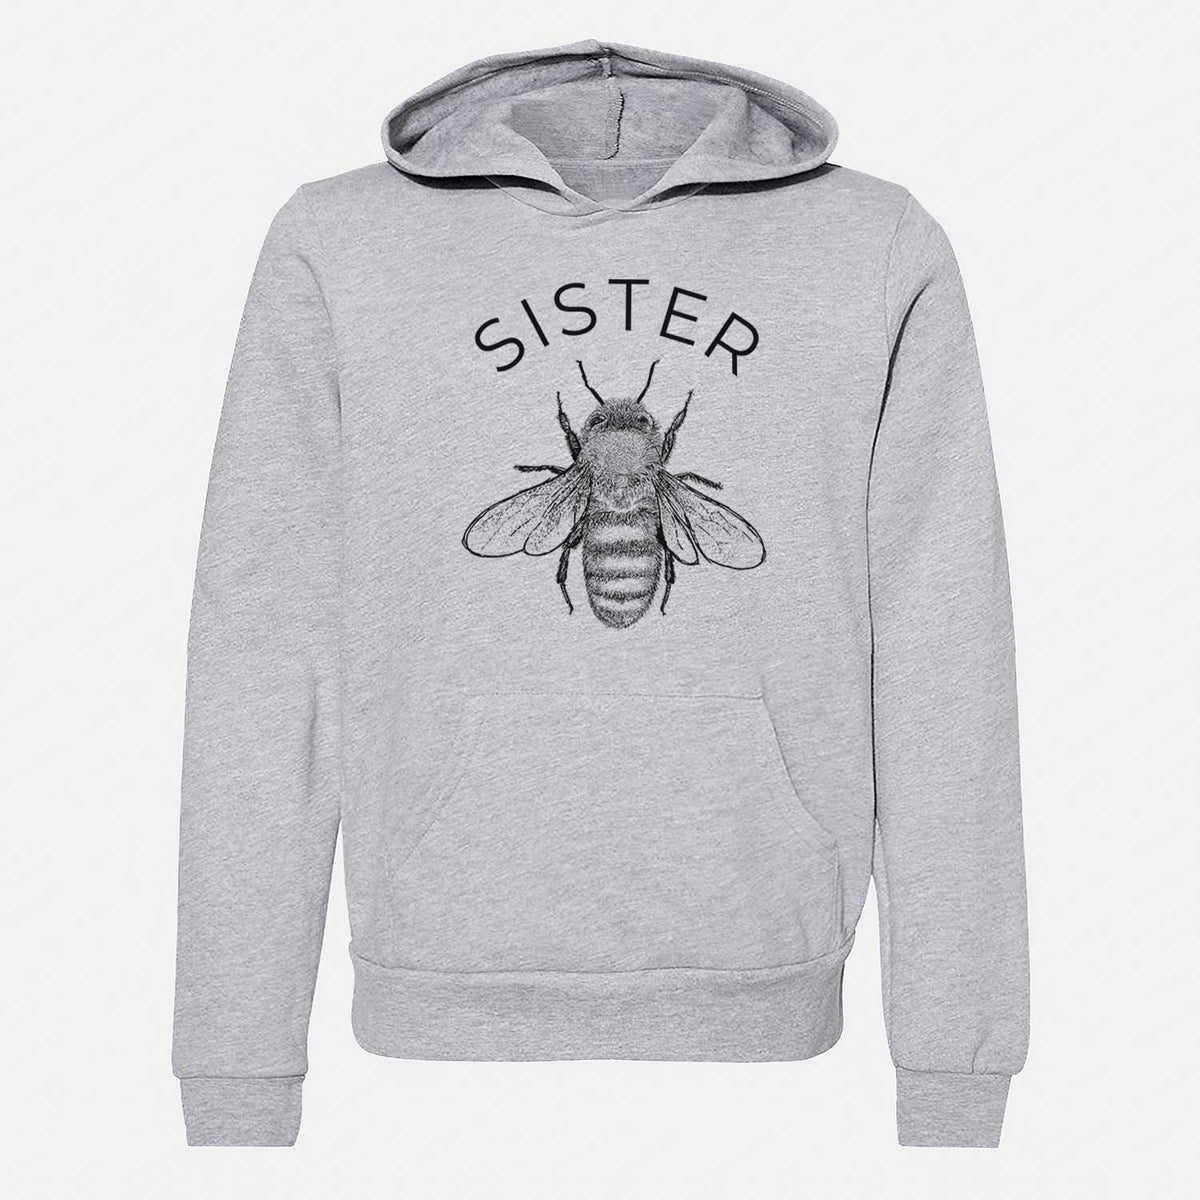 Sister Bee - Youth Hoodie Sweatshirt